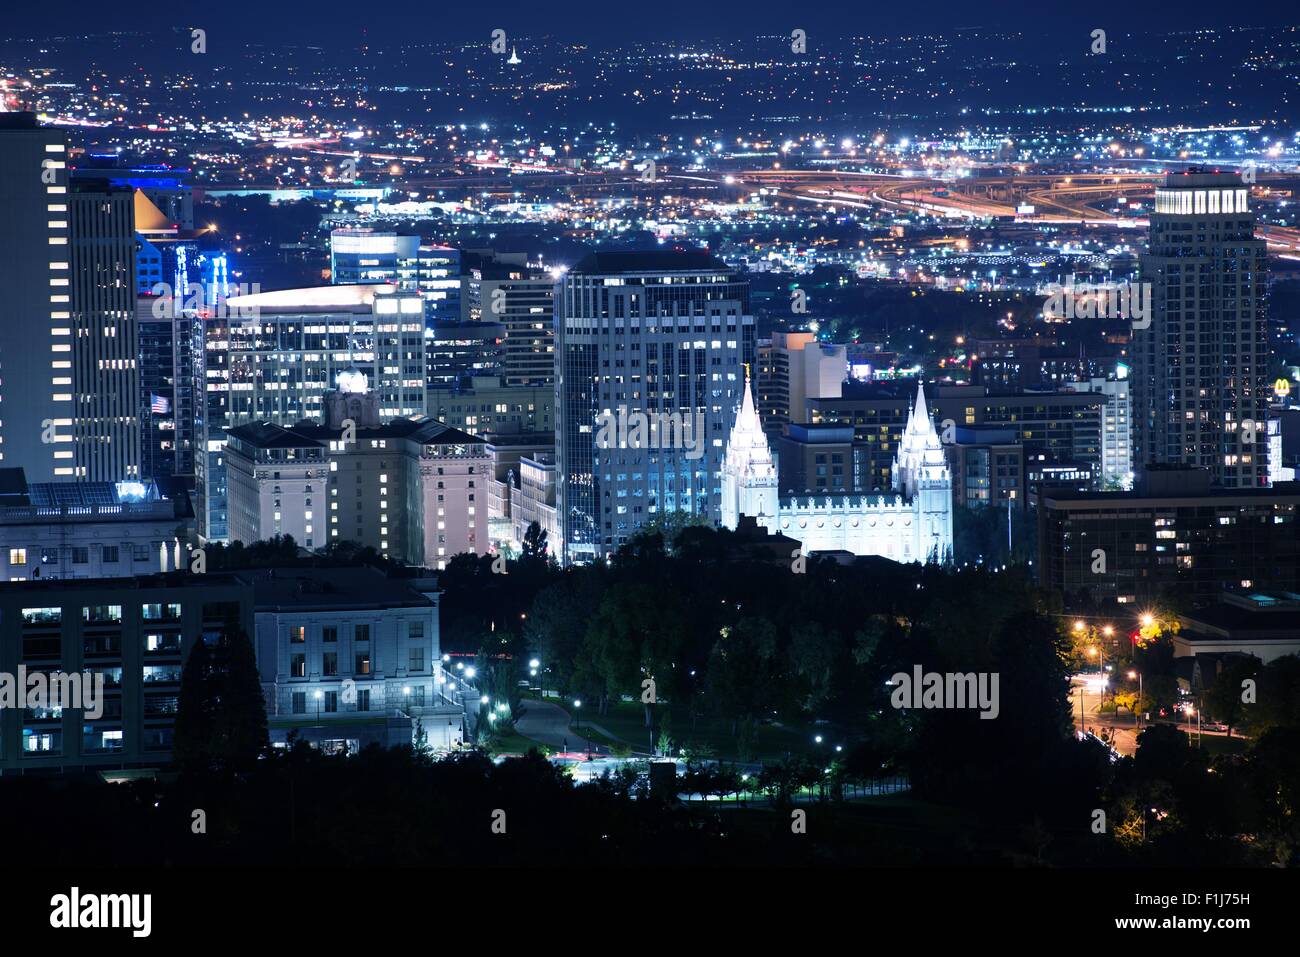 Downtown Salt Lake City, Utah at Night Stock Photo - Image of tourism, lake:  62212628